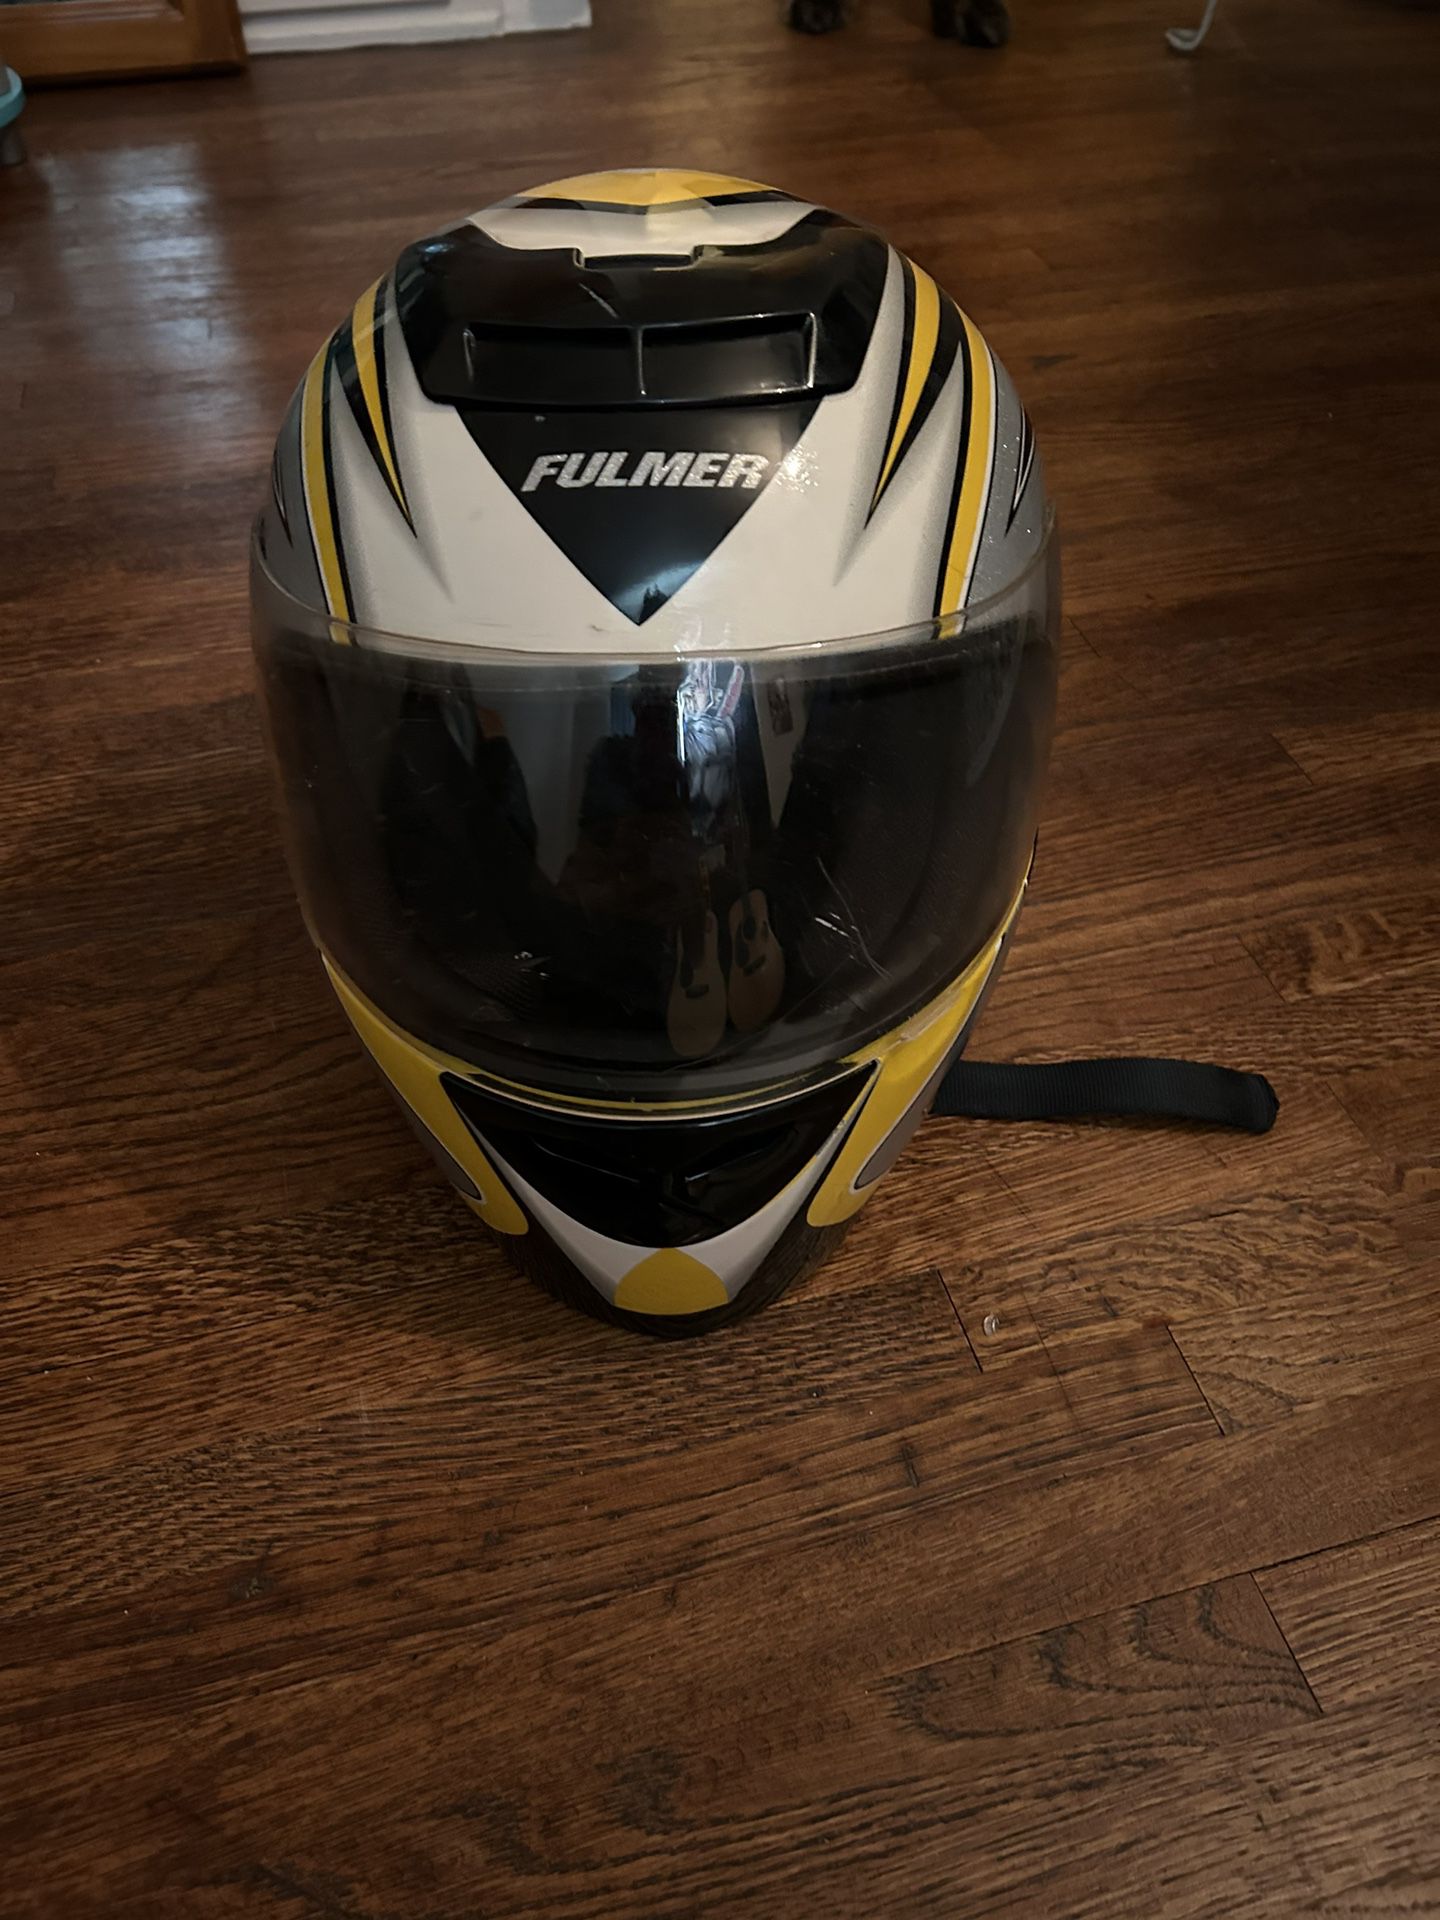 Fulmer Motorcycle Helmet 